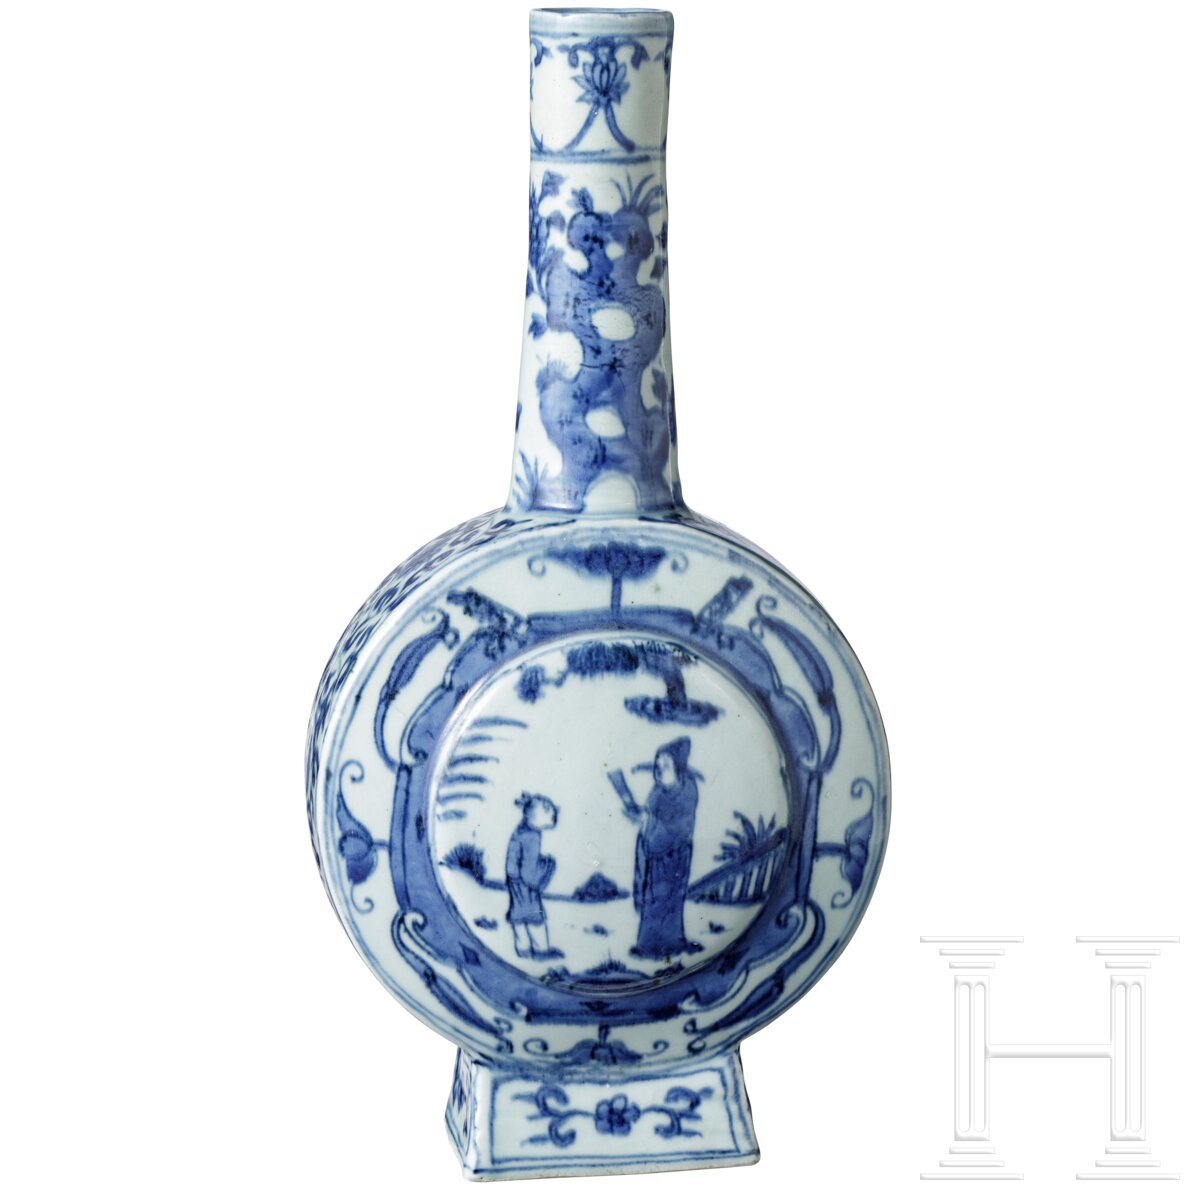 Blau-weiß glasierte Flasche mit Darstellungen eines Beamten und eines Schülers, wohl Wanli-Periode (